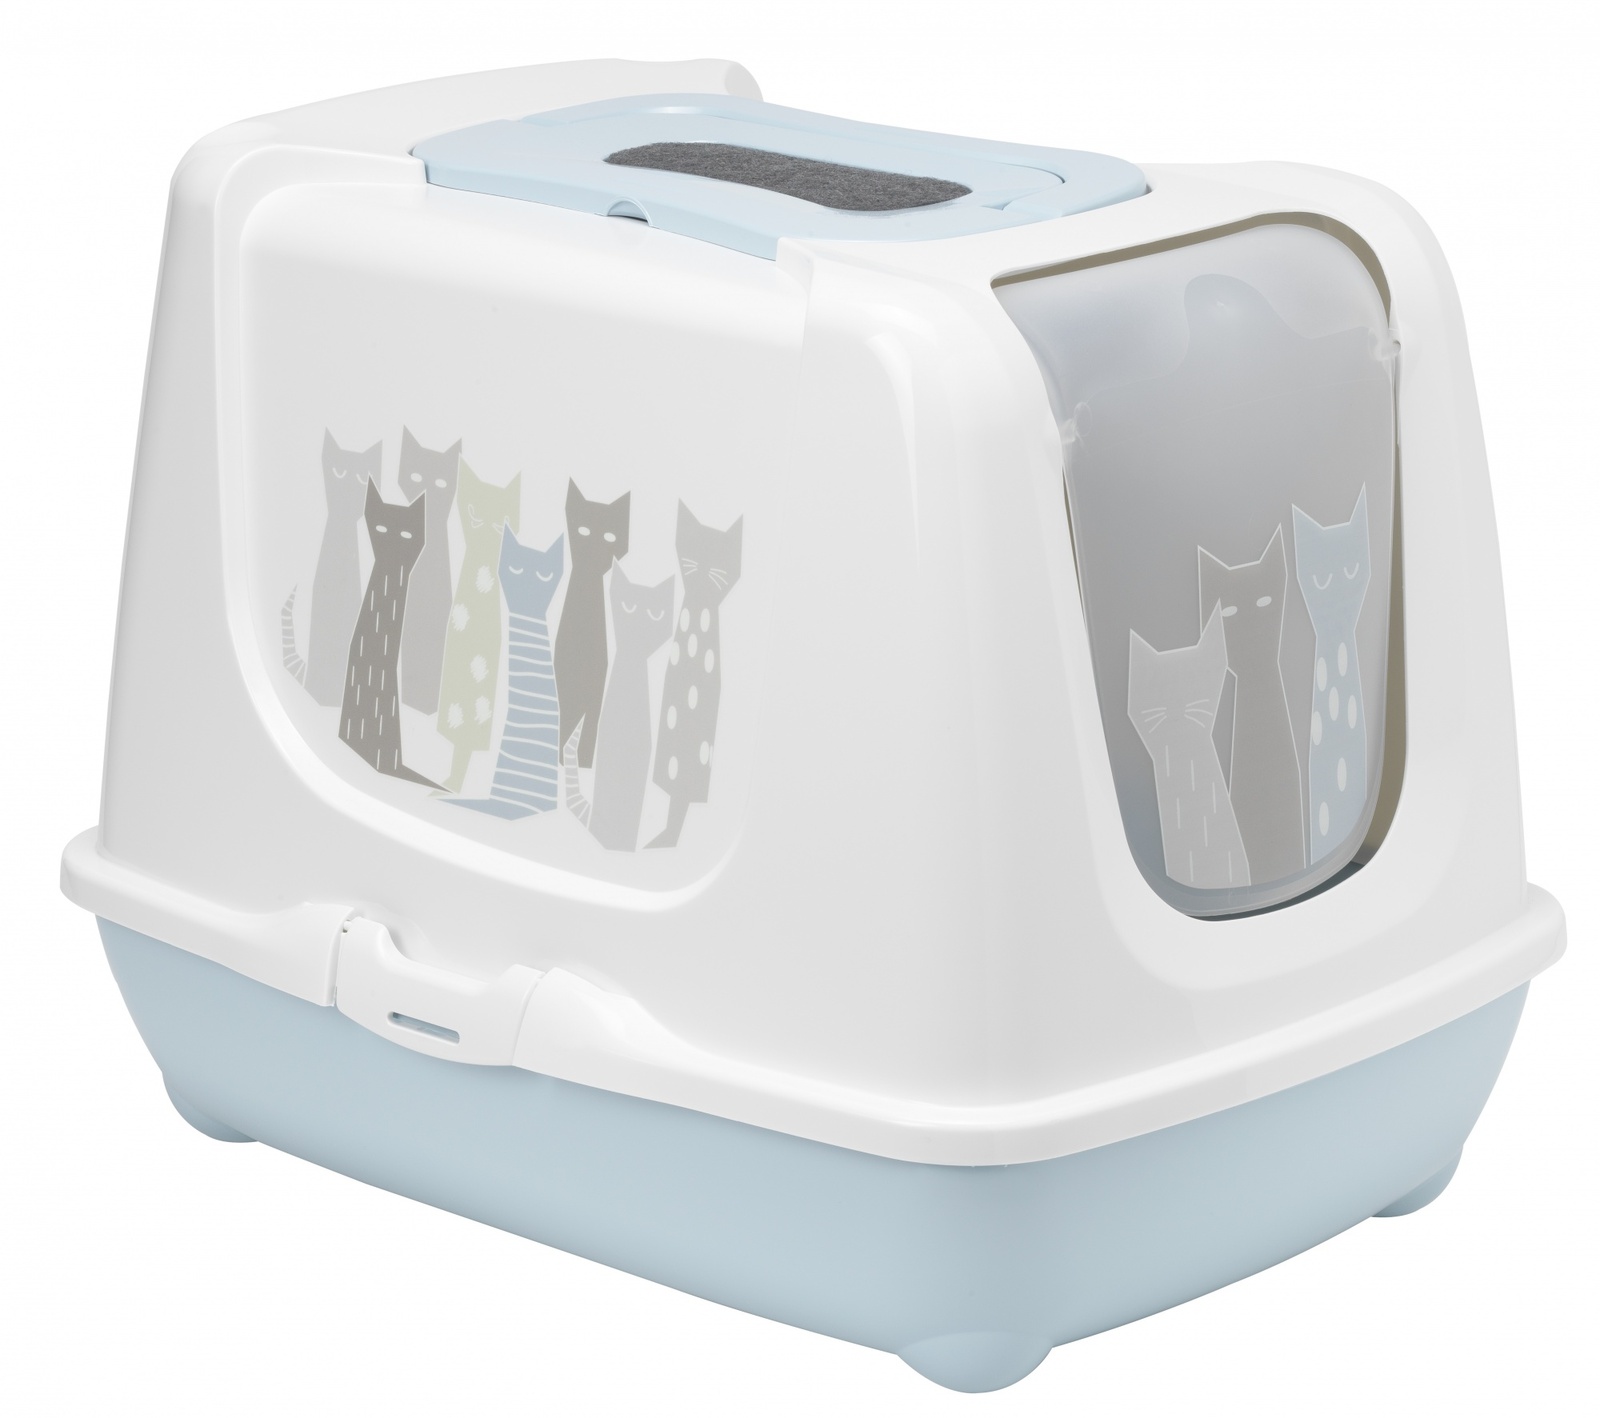 Moderna Moderna туалет-домик Trendy Cat с угольным фильтром и совком, 50х39.5х37.5 см (1,5 кг) moderna moderna туалет домик smartcat с угольным фильтром 54х40х41см теплый серый 1 2 кг